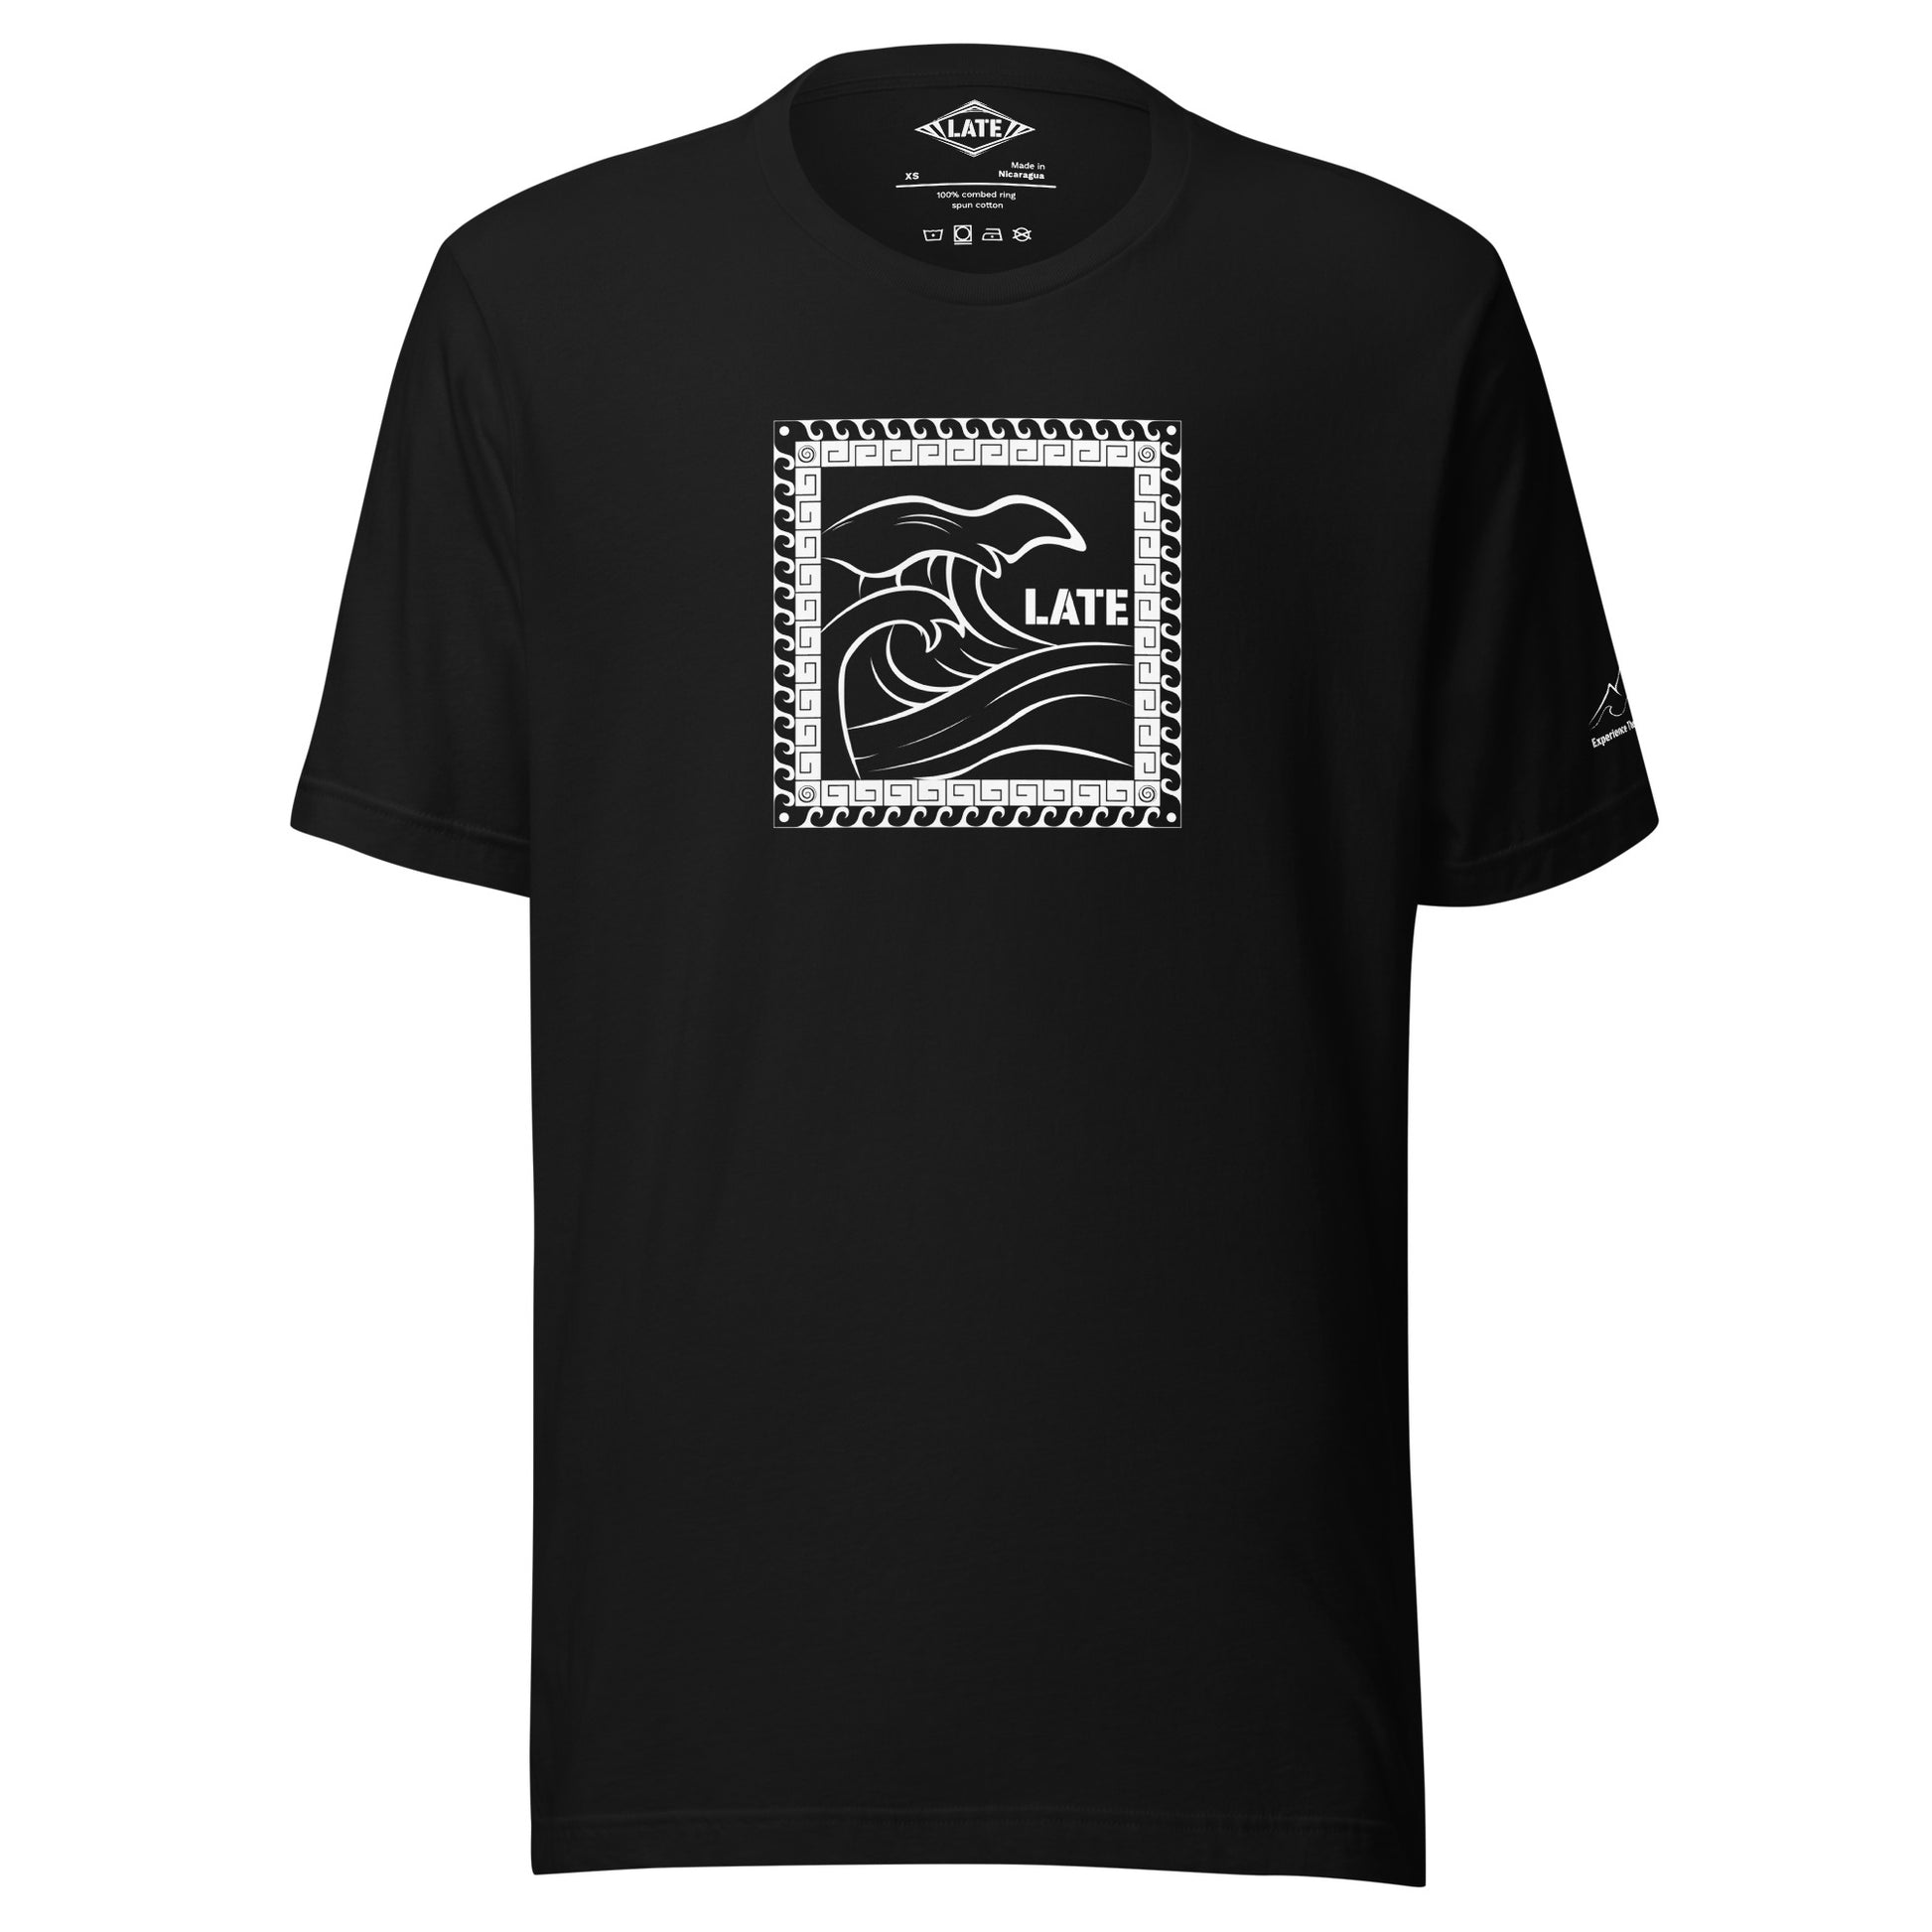 T-Shirt Tricky Wave design vague japonnaise et contour maori texte Late marque de vetement de surf. Tshirt unisex couleur noir